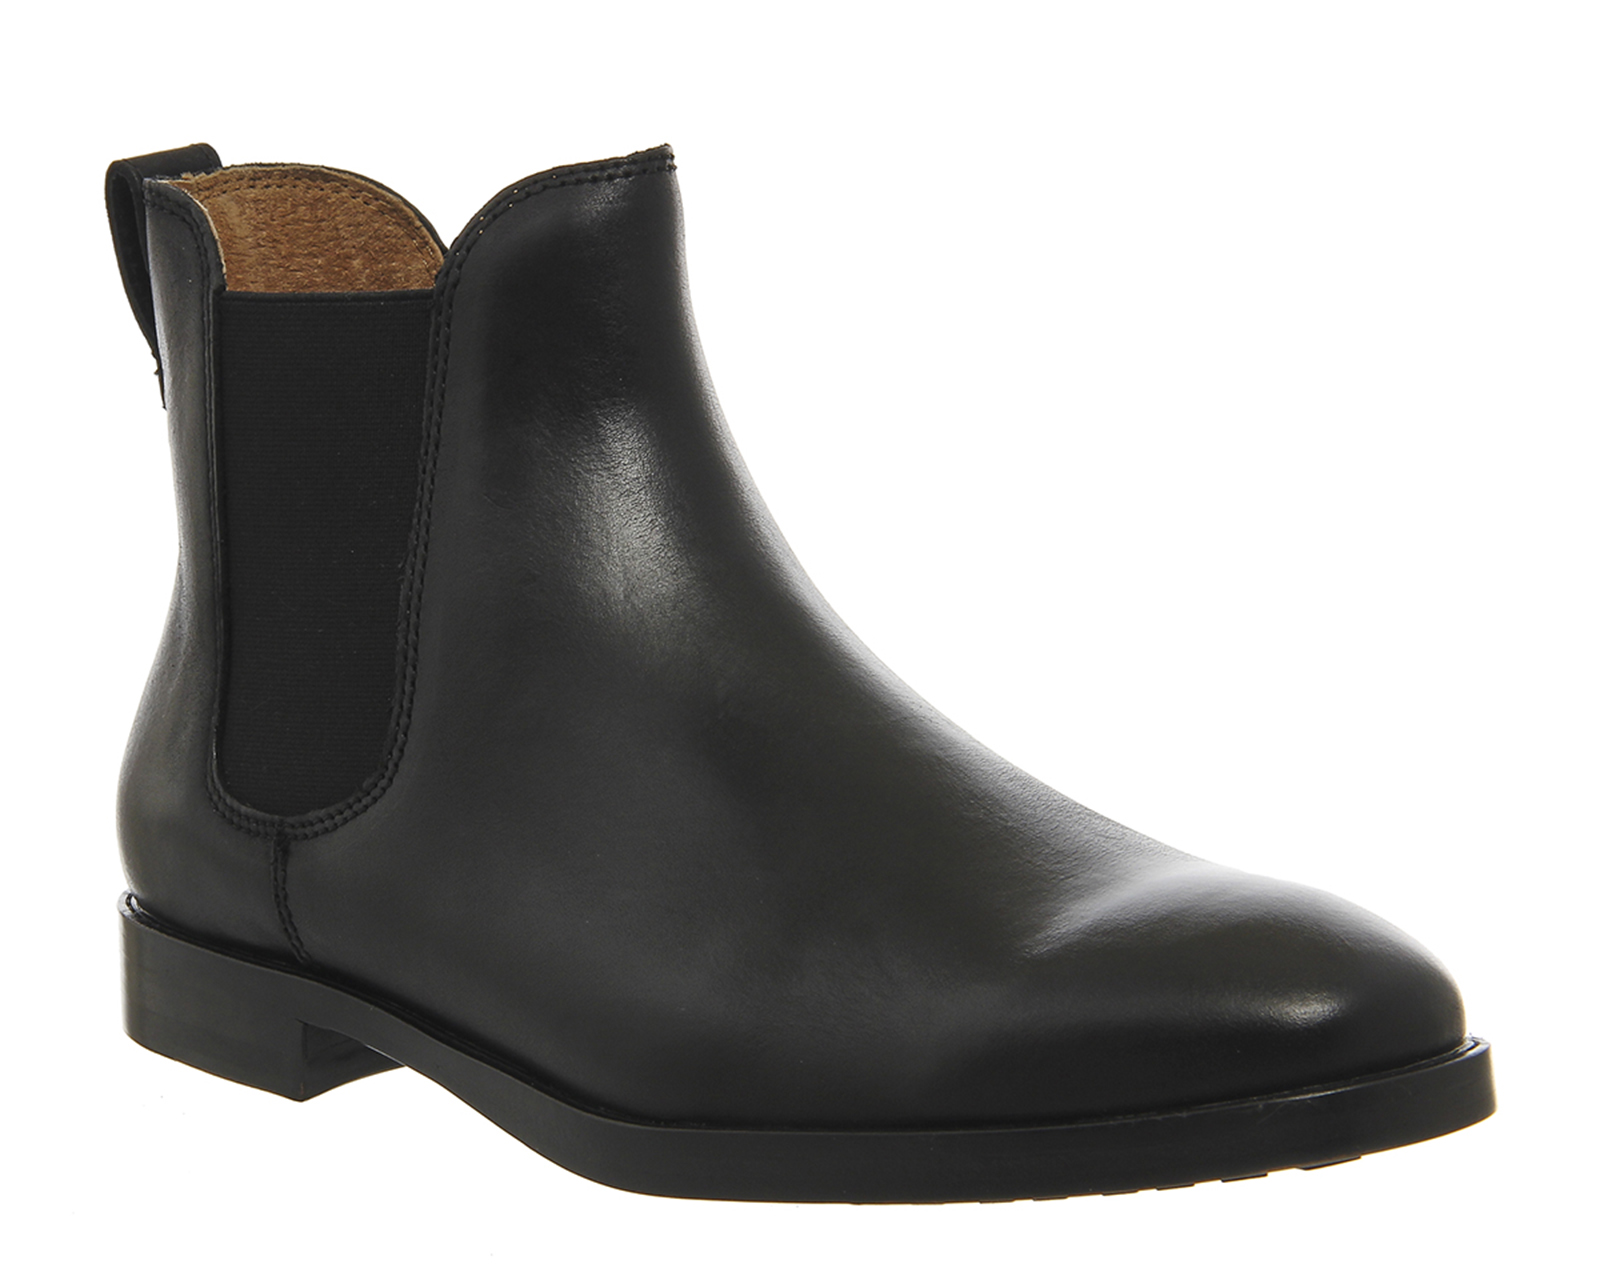 Polo Ralph Lauren Dillian Chelsea Boots Black - Men's Casual Shoes